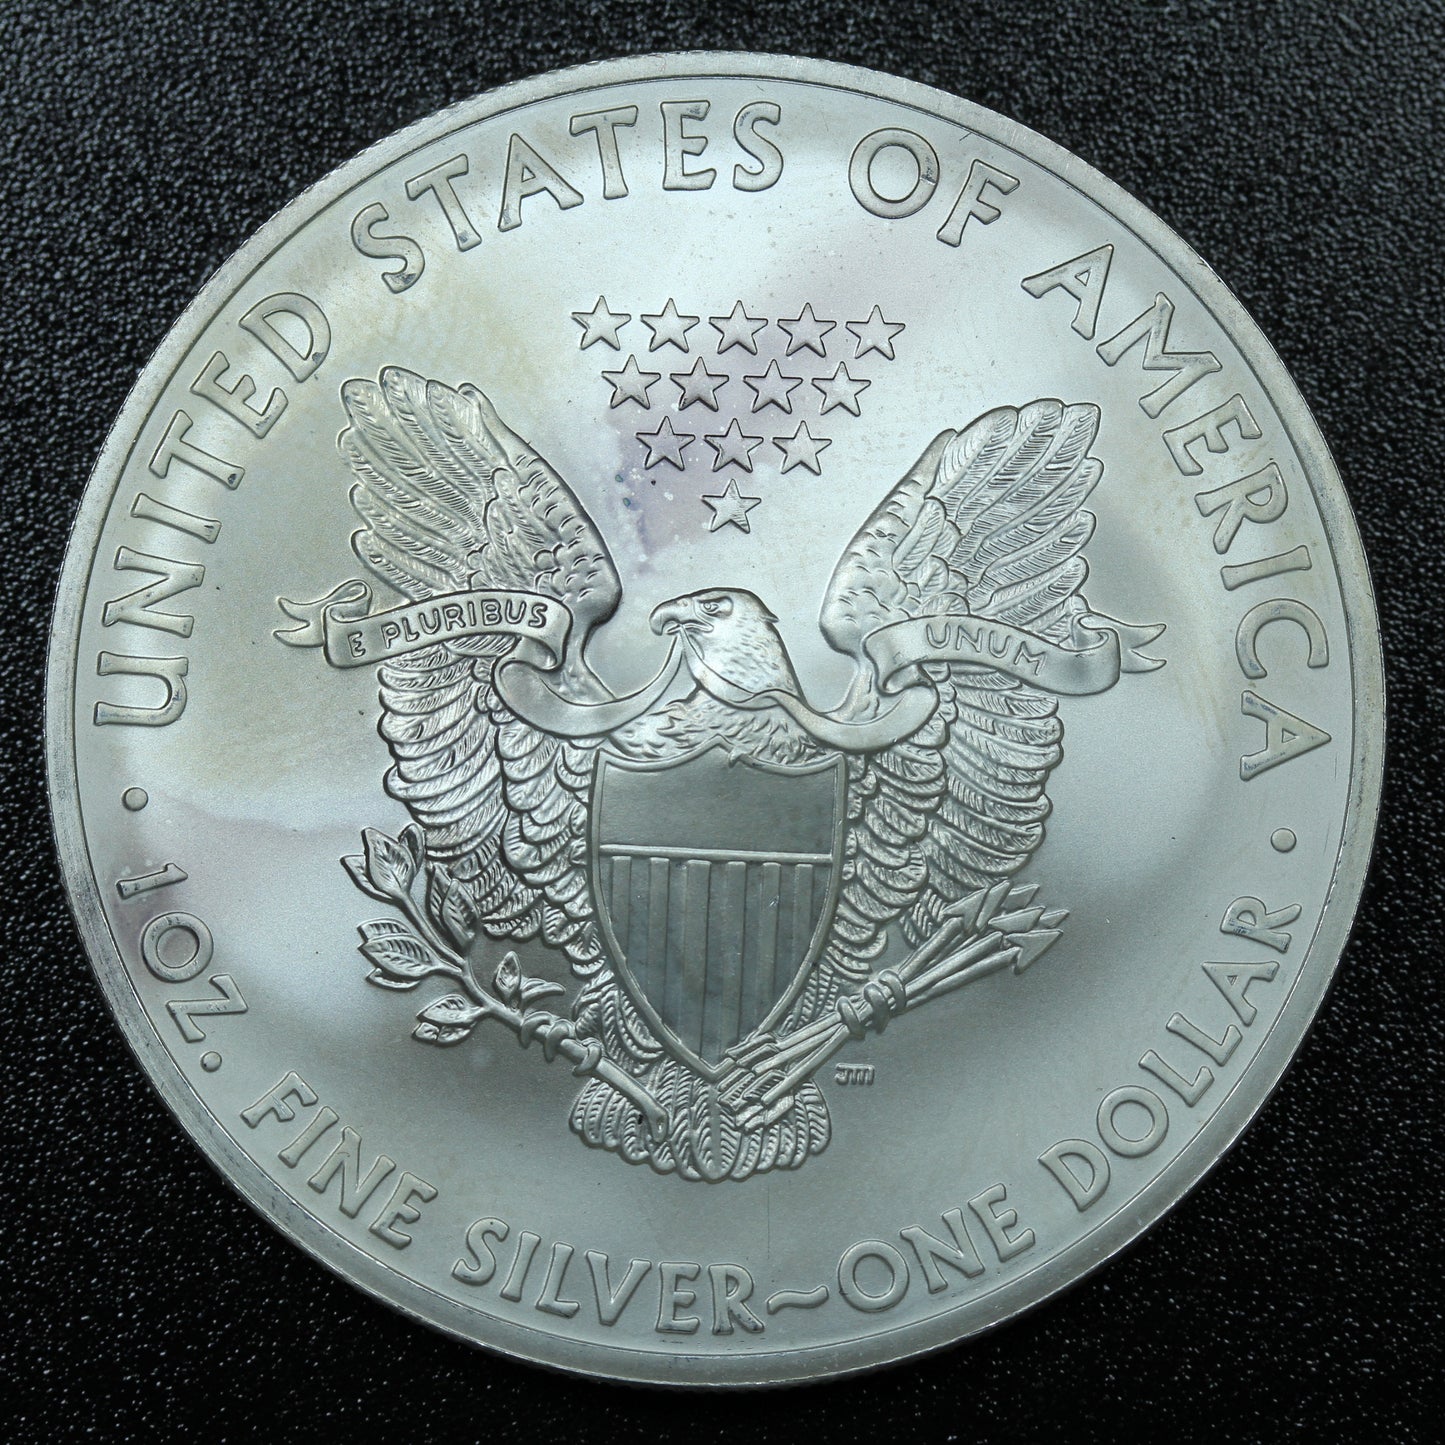 2013 American Silver Eagle 1 oz .999 Fine Silver Coin Marks/Spots